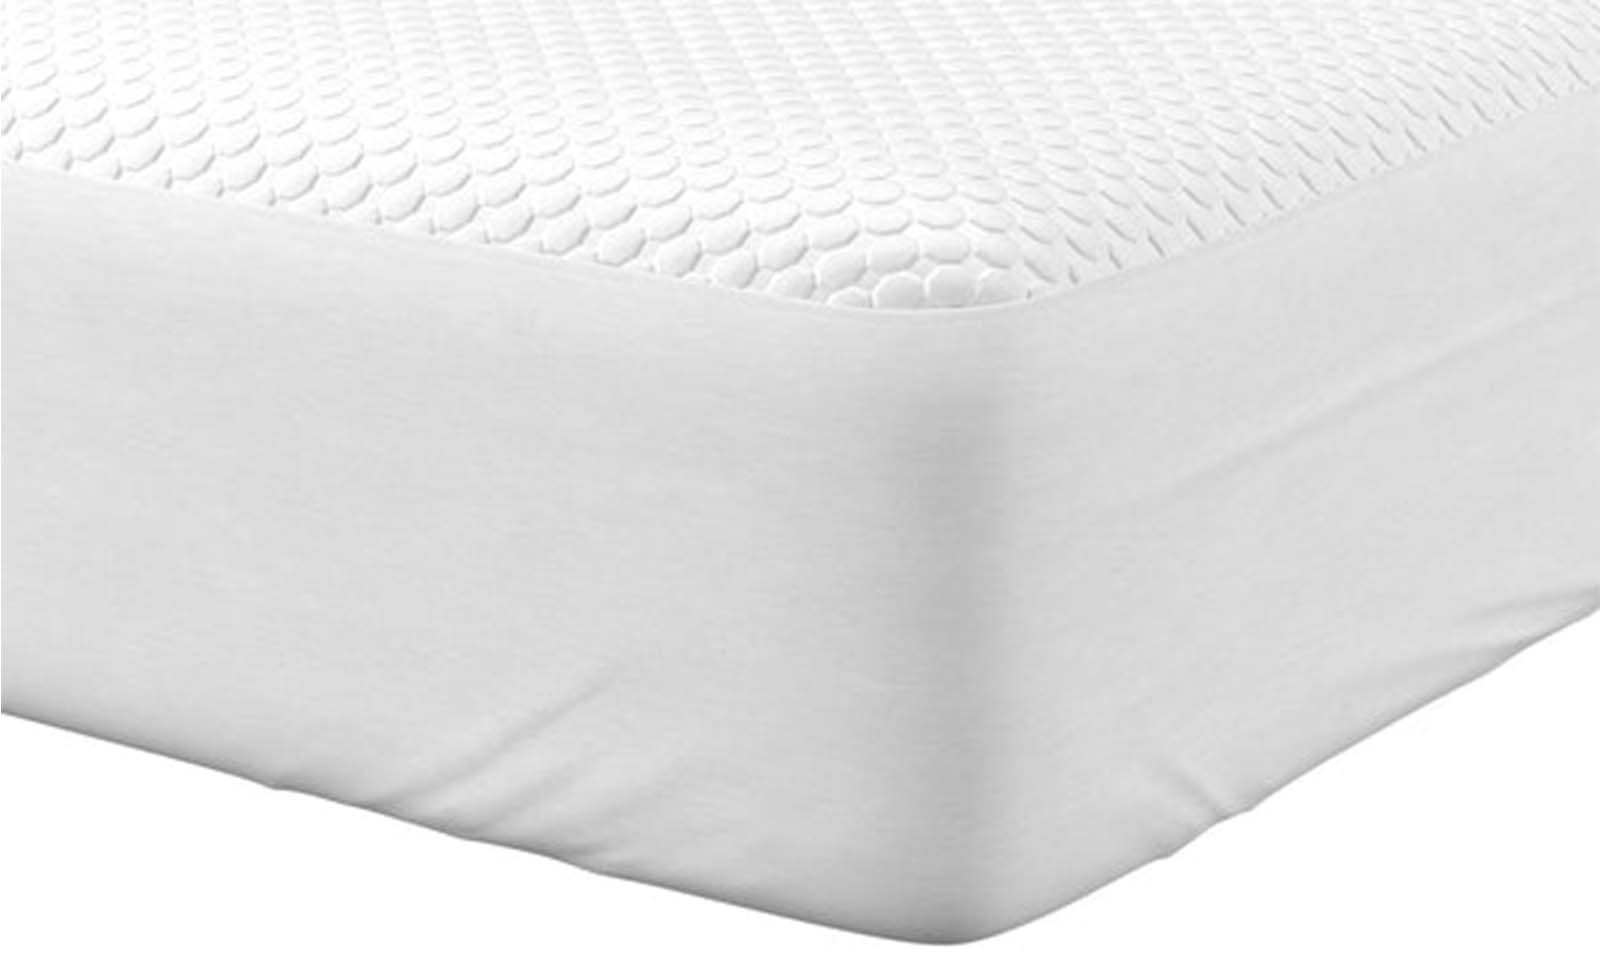 mattress protector vs sheets